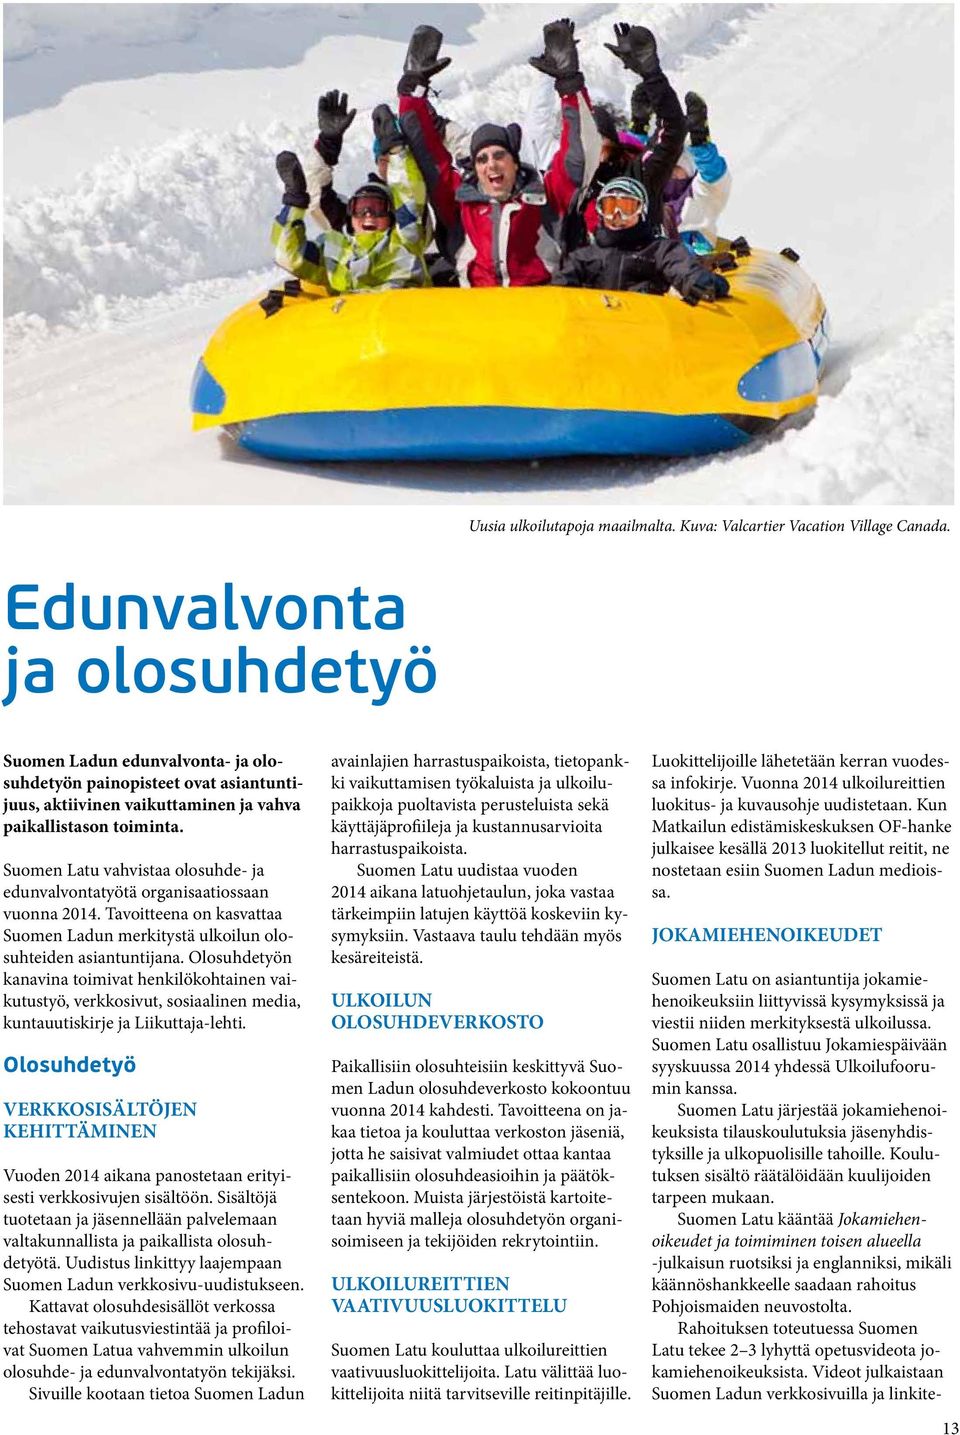 Suomen Latu vahvistaa olosuhde- ja edunvalvontatyötä organisaatiossaan vuonna 2014. Tavoitteena on kasvattaa Suomen Ladun merkitystä ulkoilun olosuhteiden asiantuntijana.